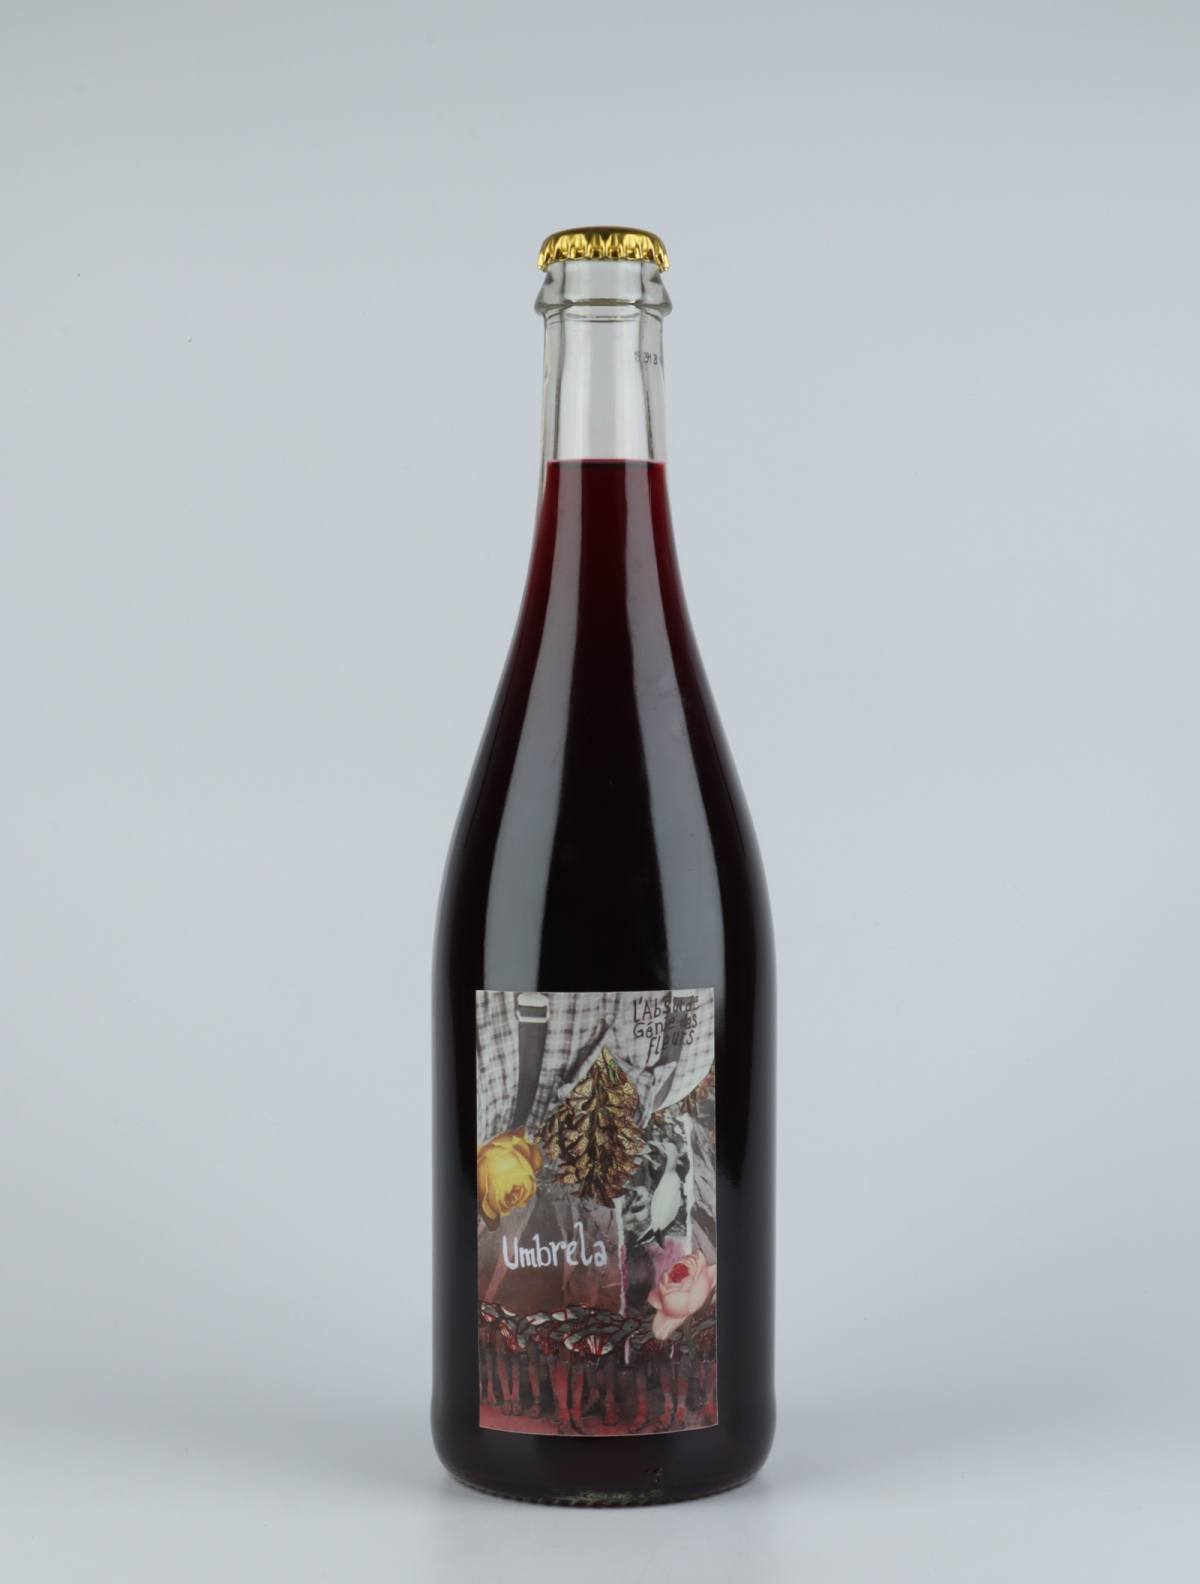 A bottle 2019 Umbrela Red wine from Absurde Génie des Fleurs, Languedoc in France